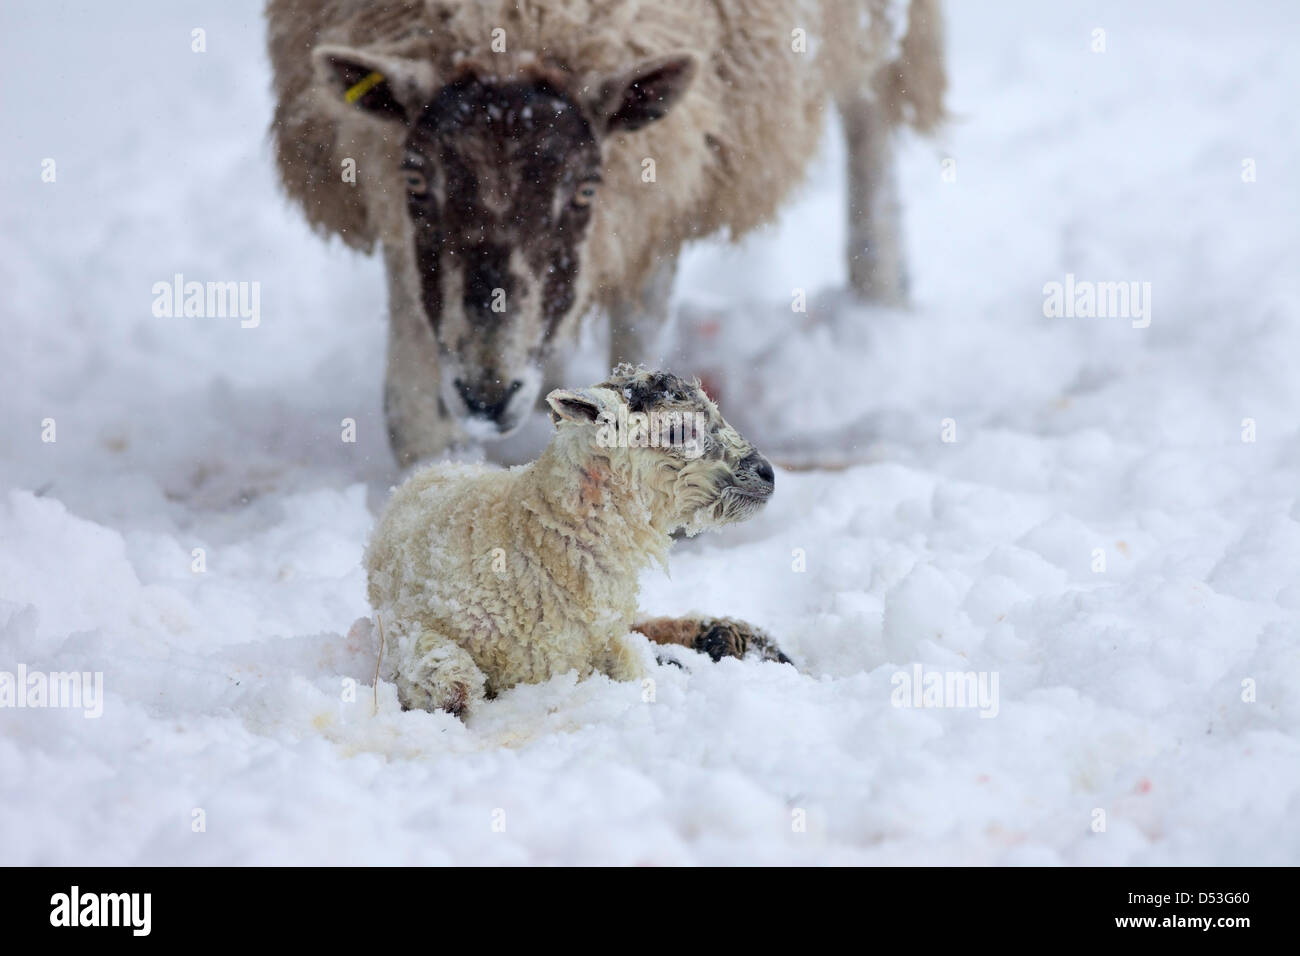 County Durham Großbritannien. 23. März 2013 Schafe mit ihrem Lamm, das während der schweren Schneefall und Schneestürme, die die Gegend über Nacht getroffen geboren wurde. Kredit: David Forster / Alamy Live Nachrichten Stockfoto